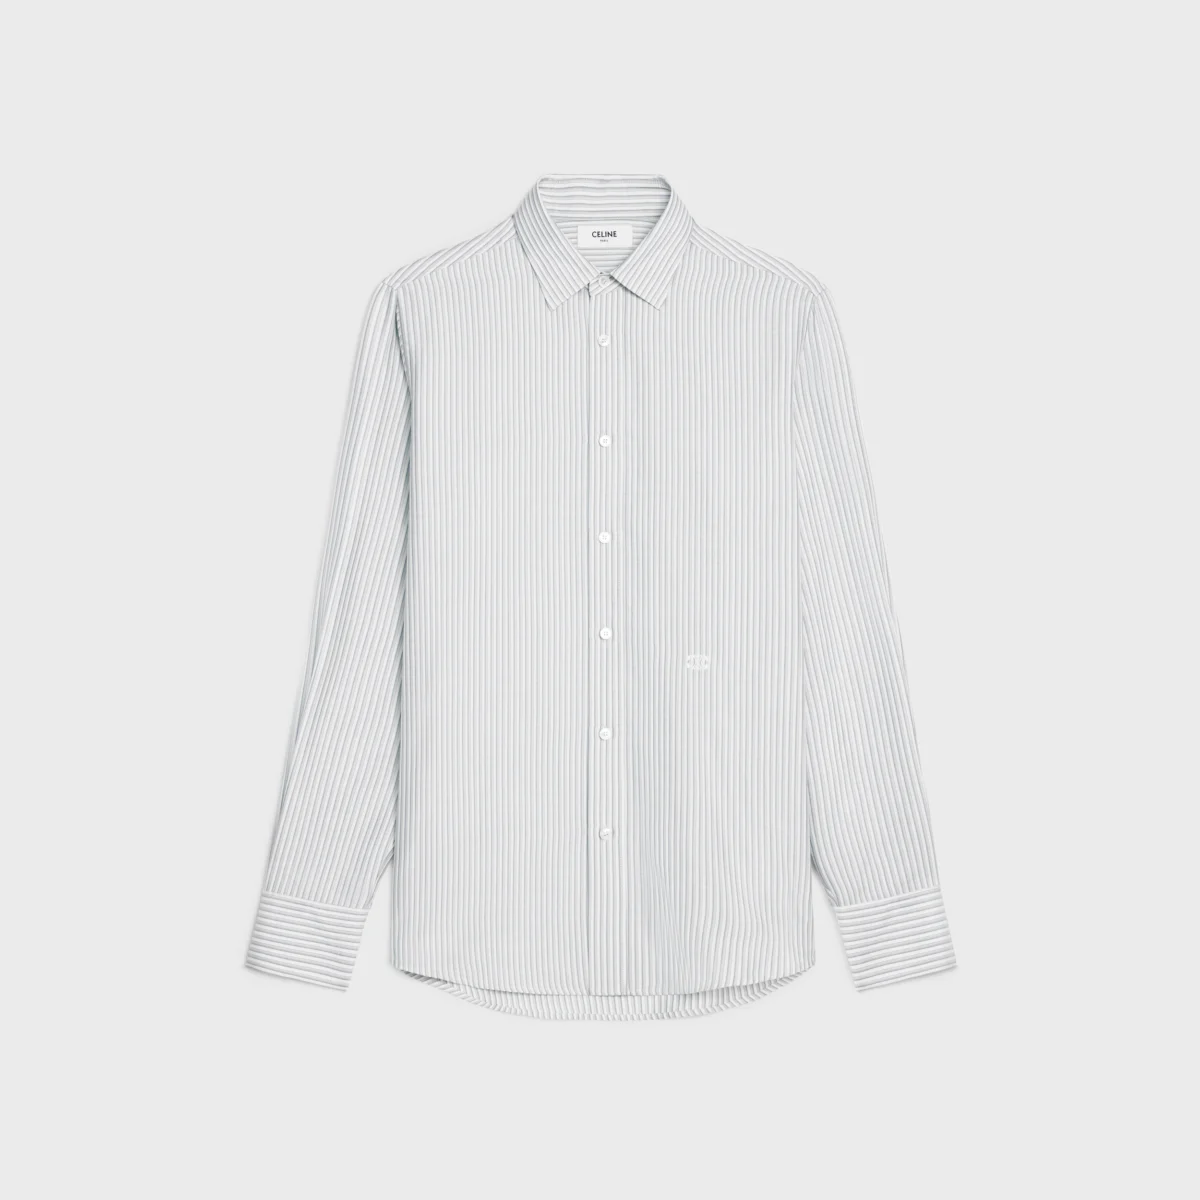 celine white shirt